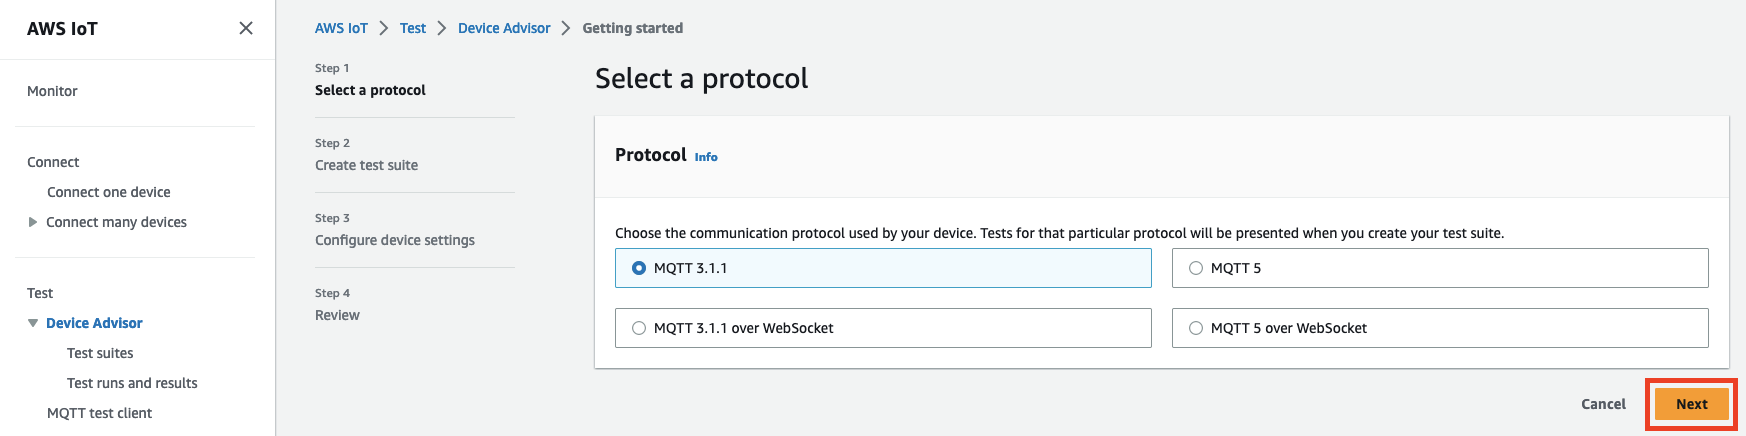 IoT デバイスをテストするための通信プロトコル (MQTT 3.1.1、MQTT 3.1.1 オーバー、MQTT 5 WebSocket、MQTT 5 オーバー WebSocket) を選択するオプションを表示するデバイスアドバイザーインターフェイス。